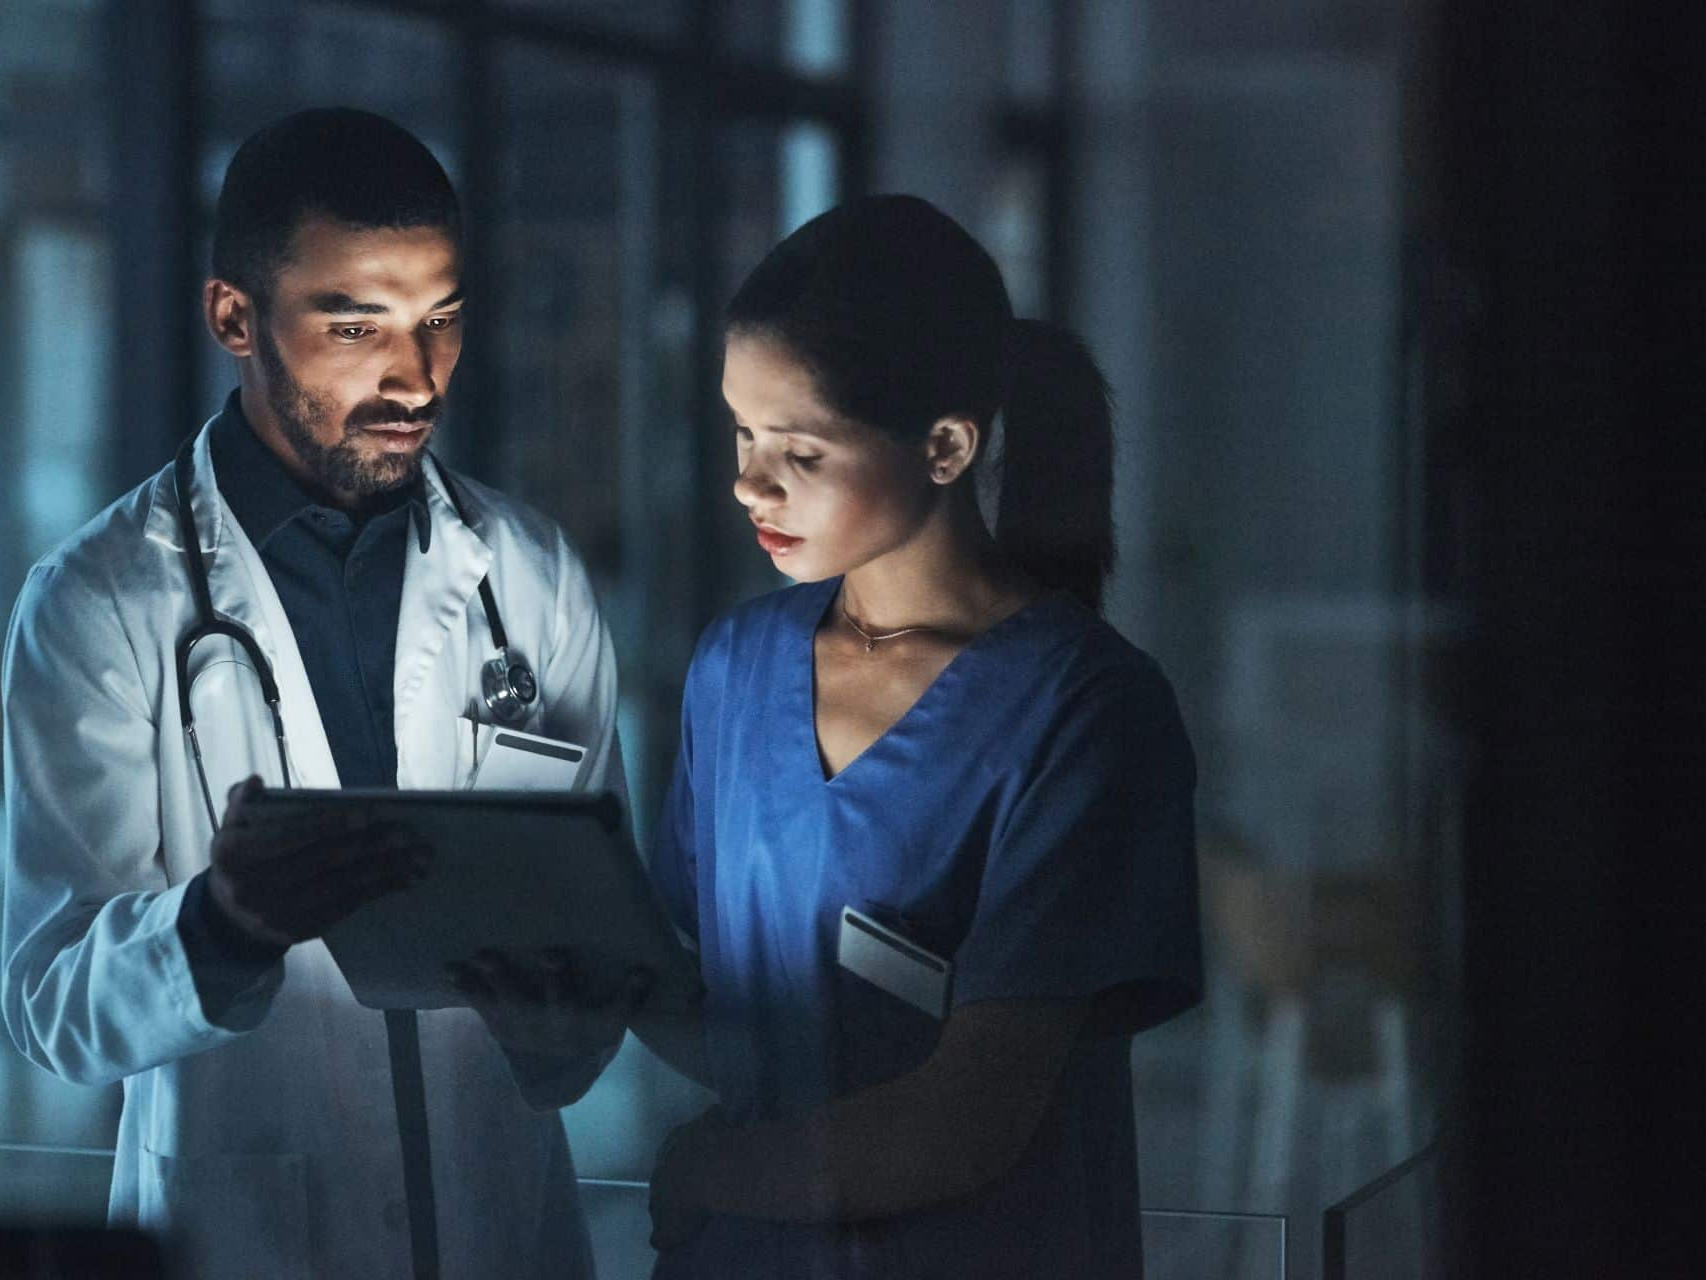 Ein Arzt arbeitet am Tablet zusammen mit einer Pflegerin nachts im Krankenhaus